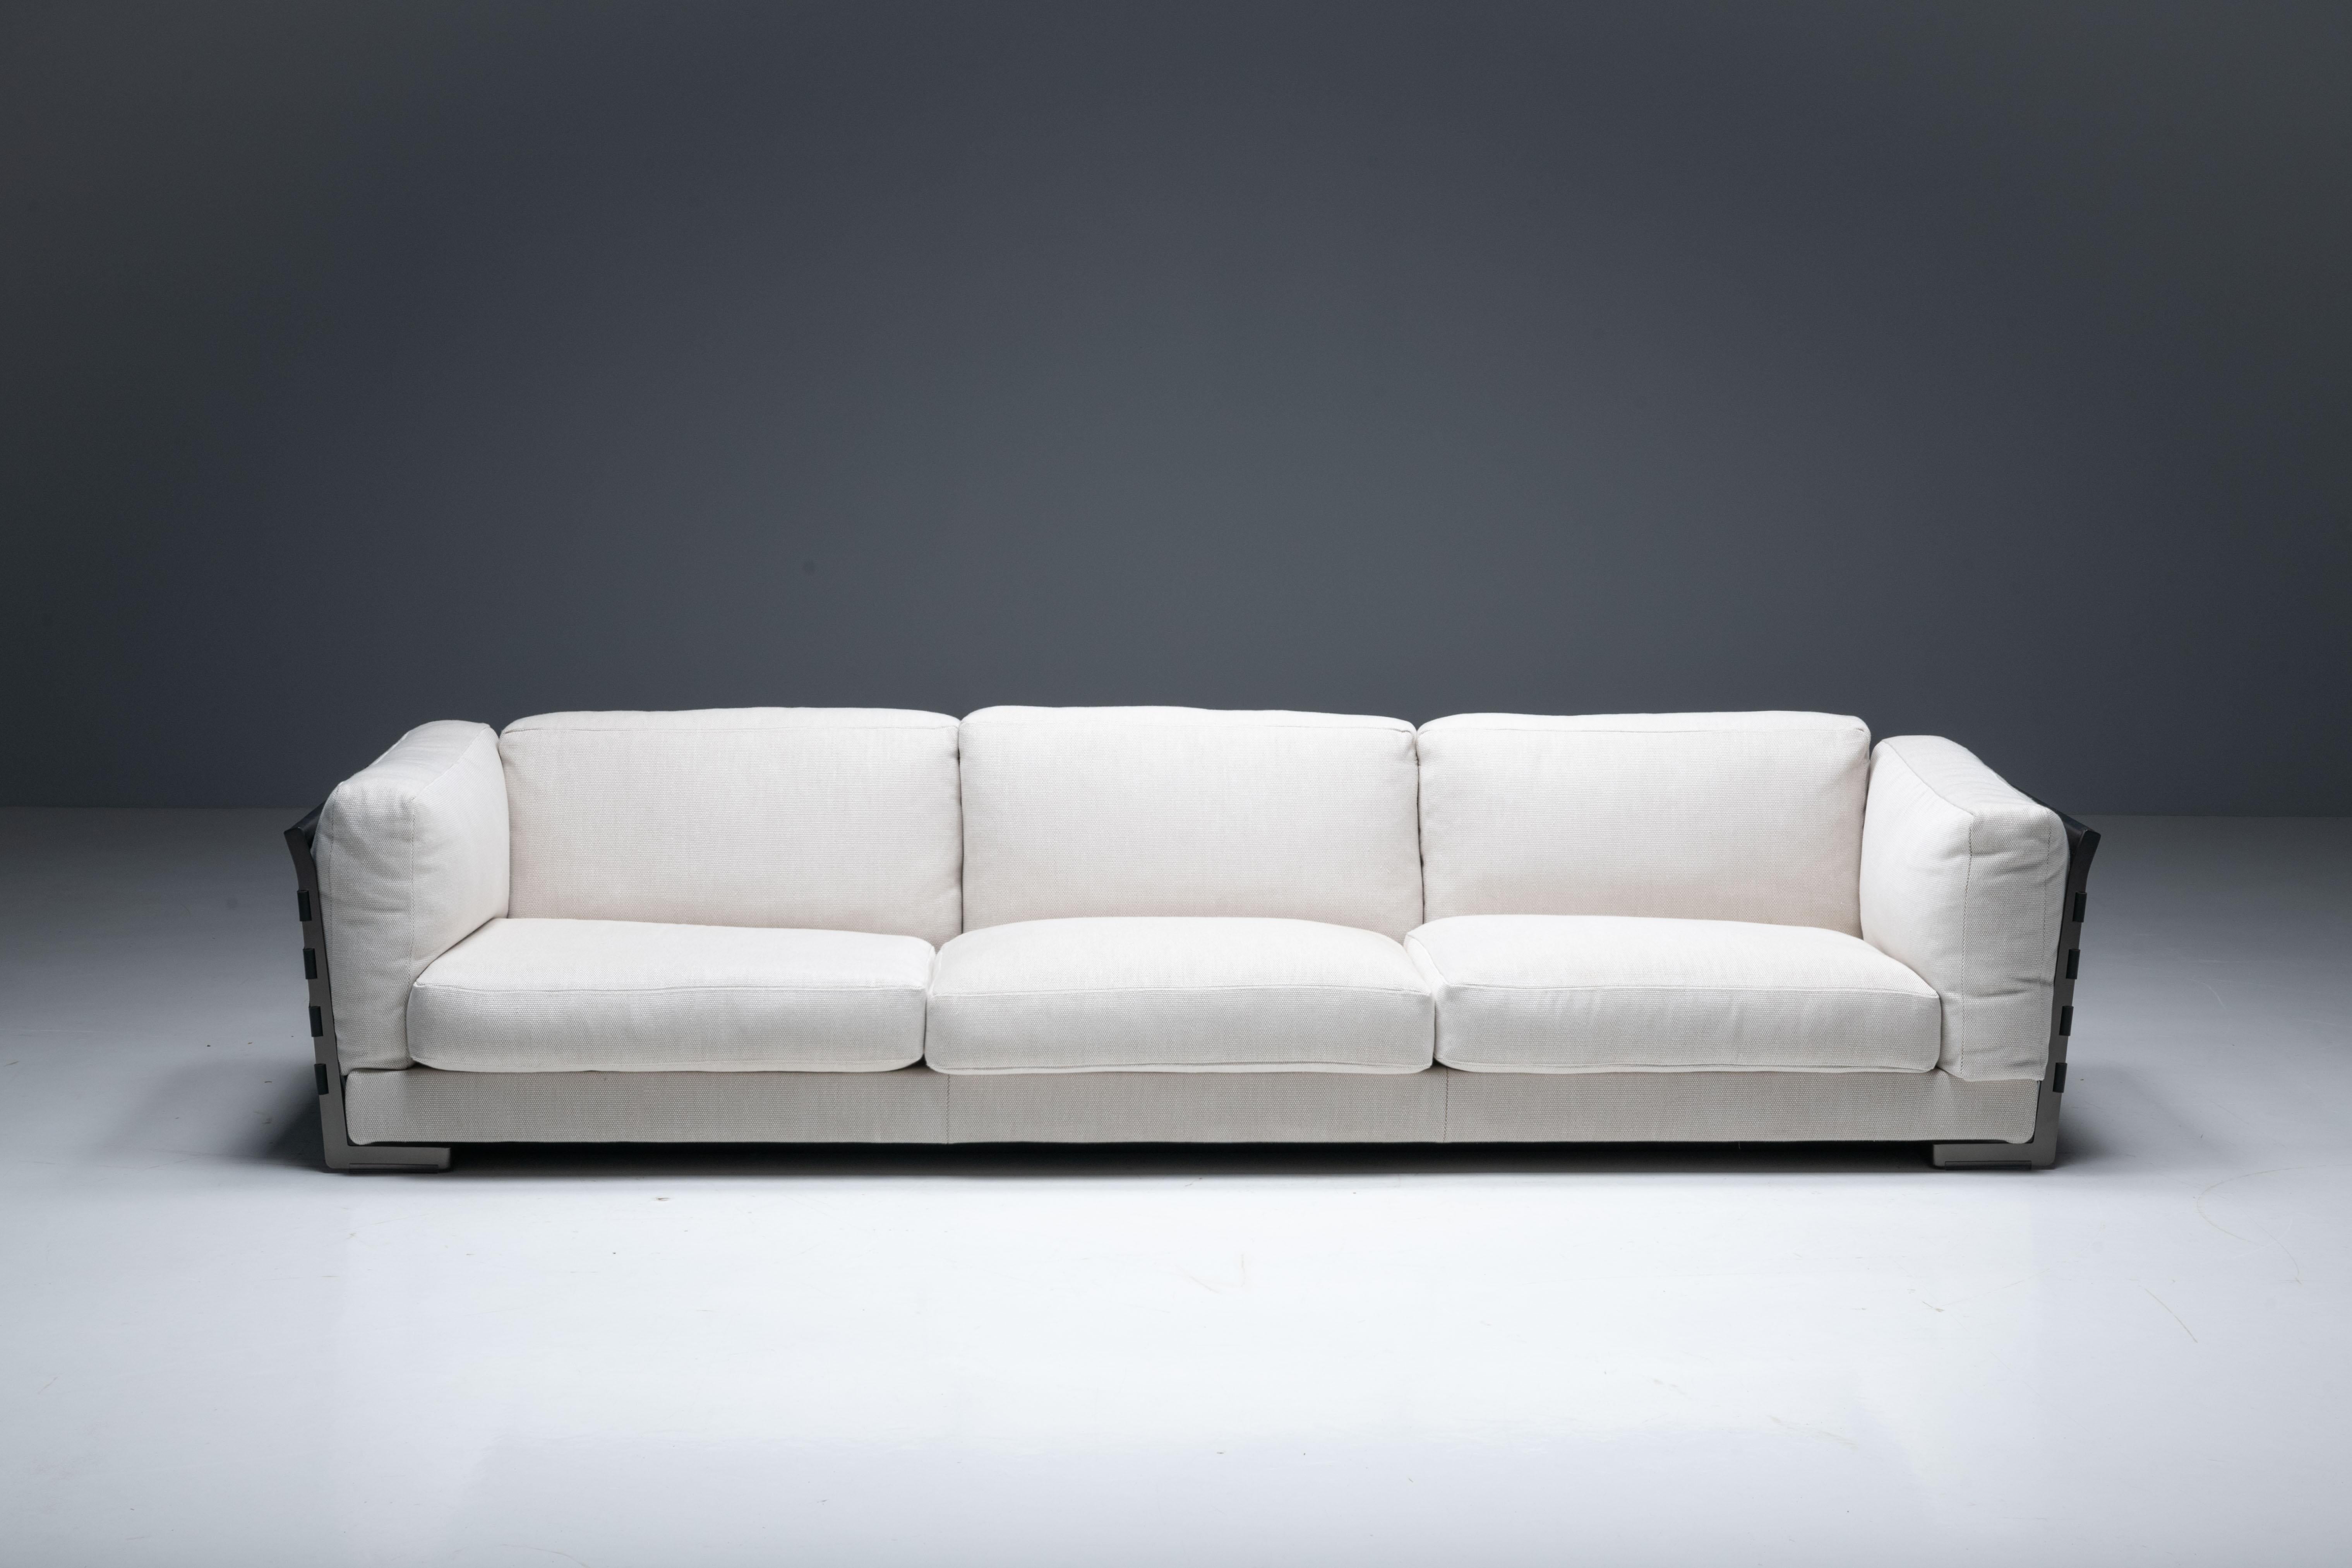 Le canapé trois places Cestone, conçu en 2008 par Antonio Citterio pour Flexform, est l'incarnation de l'authentique artisanat italien. Ce modèle de salle d'exposition, conçu pour attirer l'attention et occuper une place centrale dans votre espace